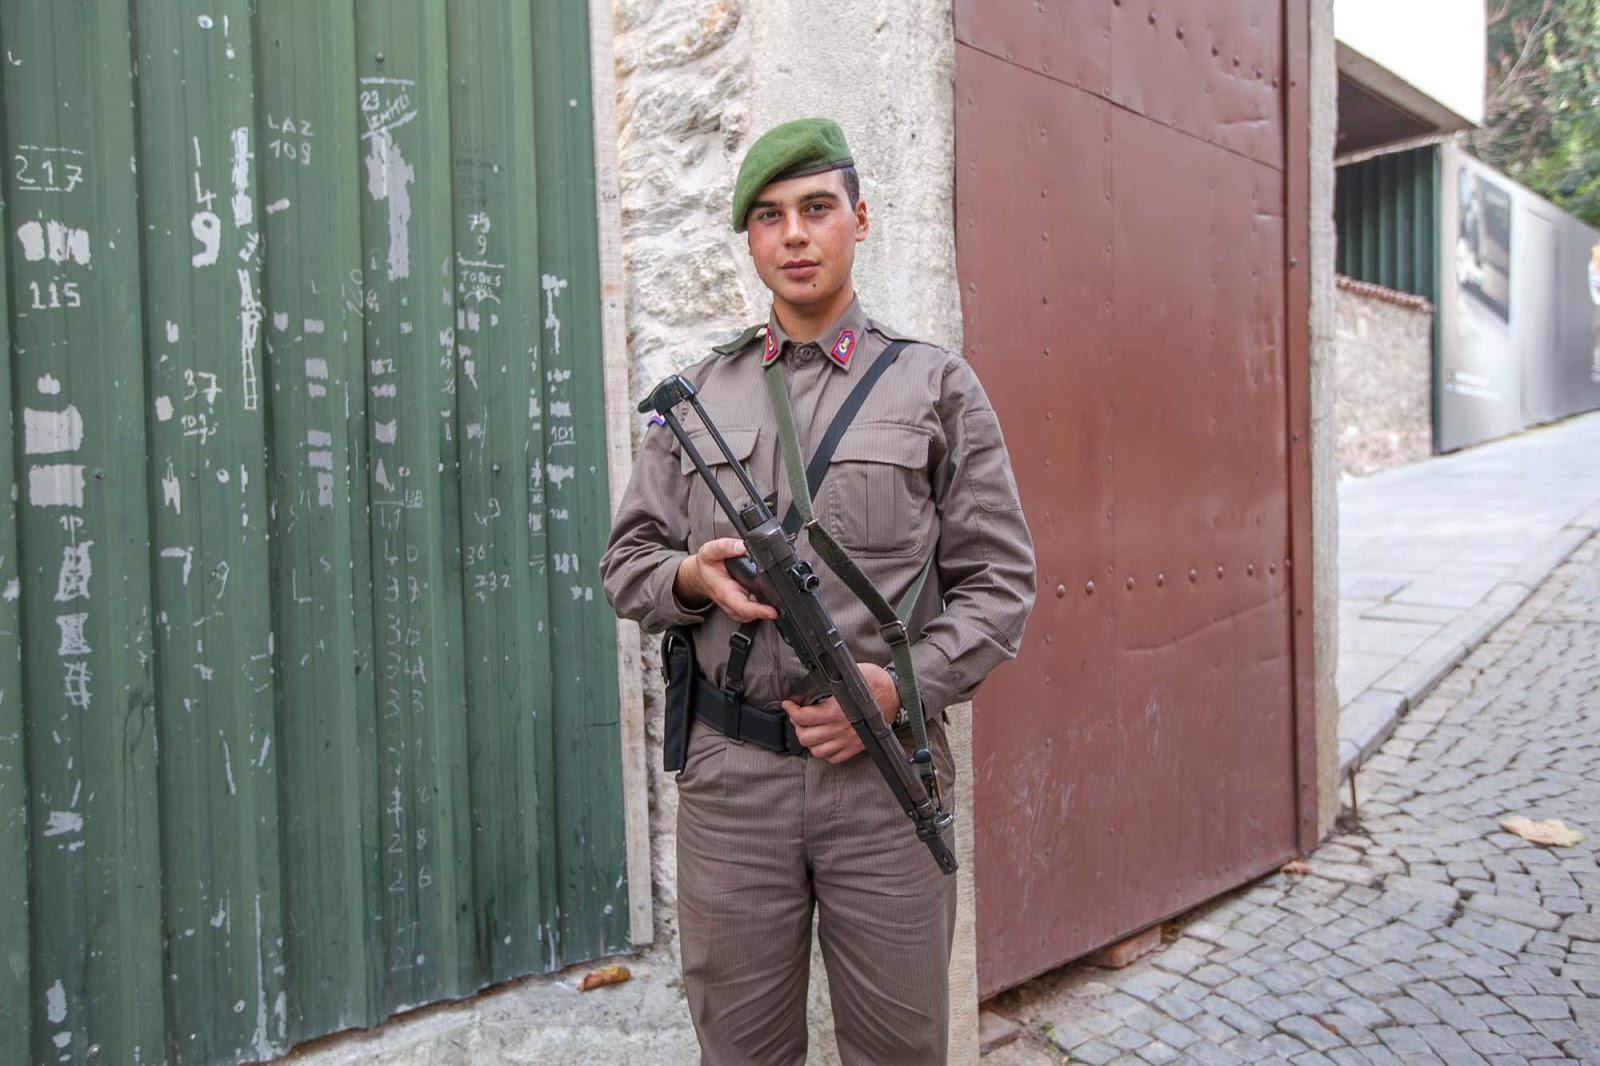 Turkish soldier